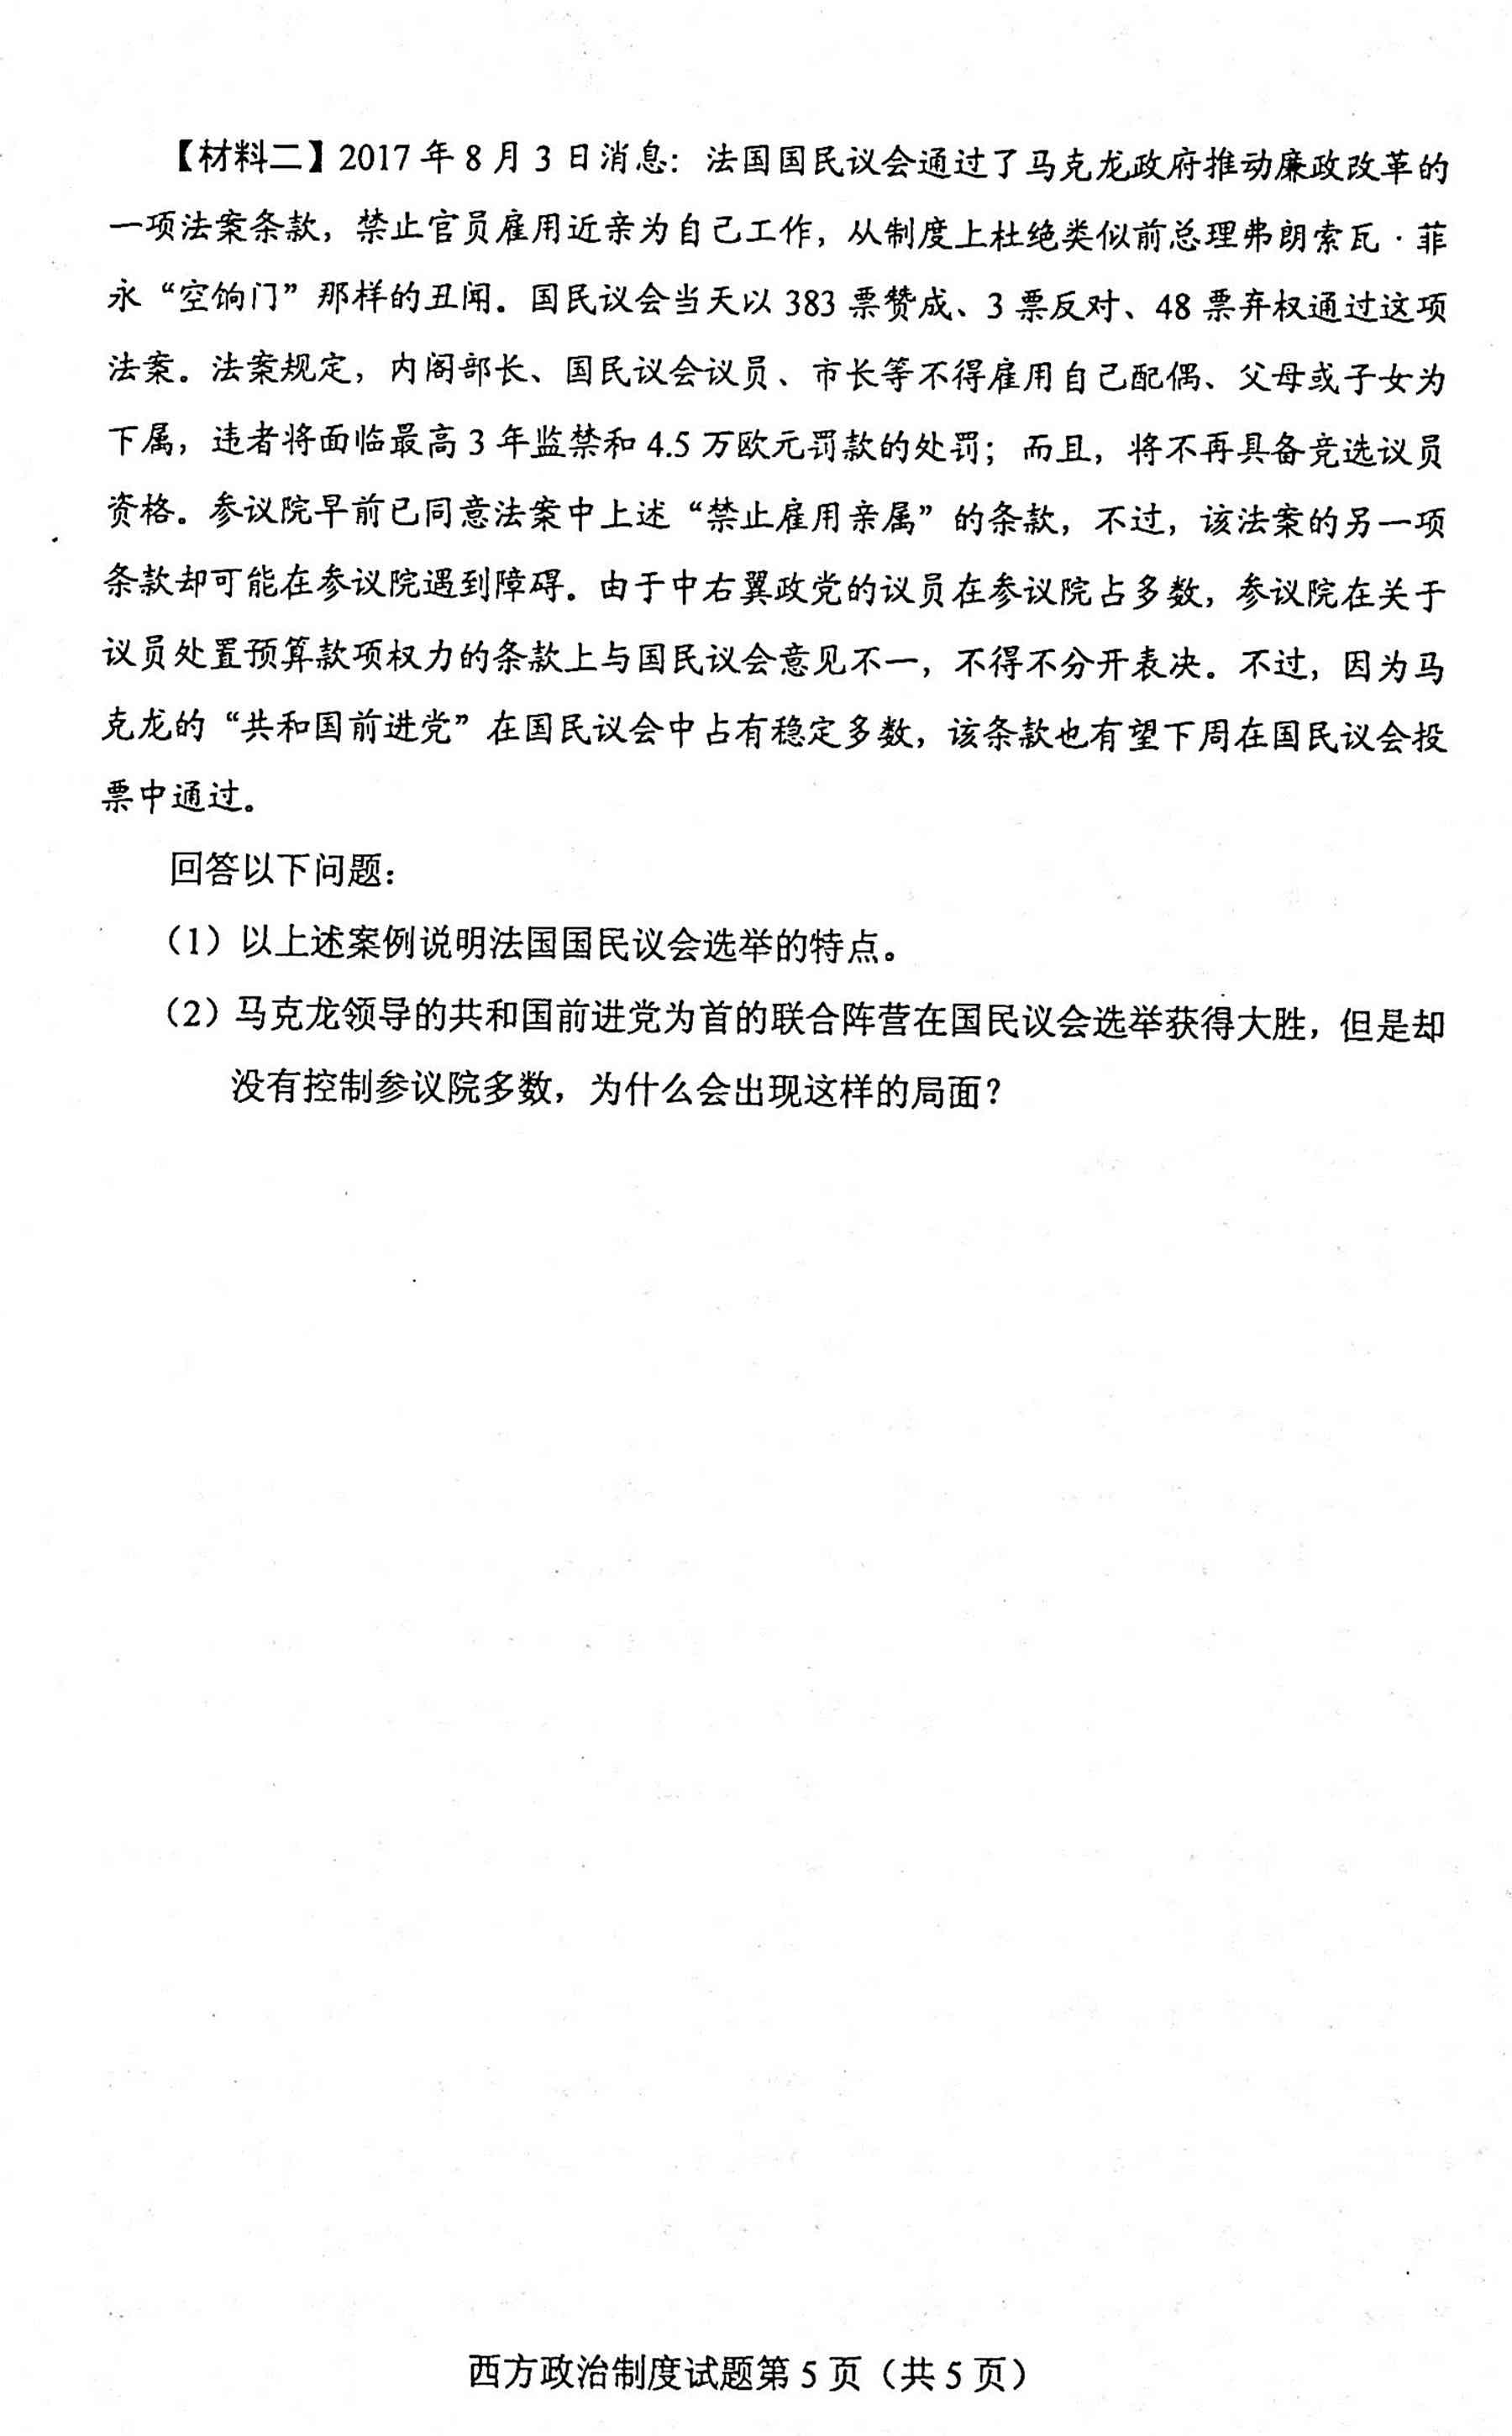 贵州省2020年10月自学考试00316西方政治制度